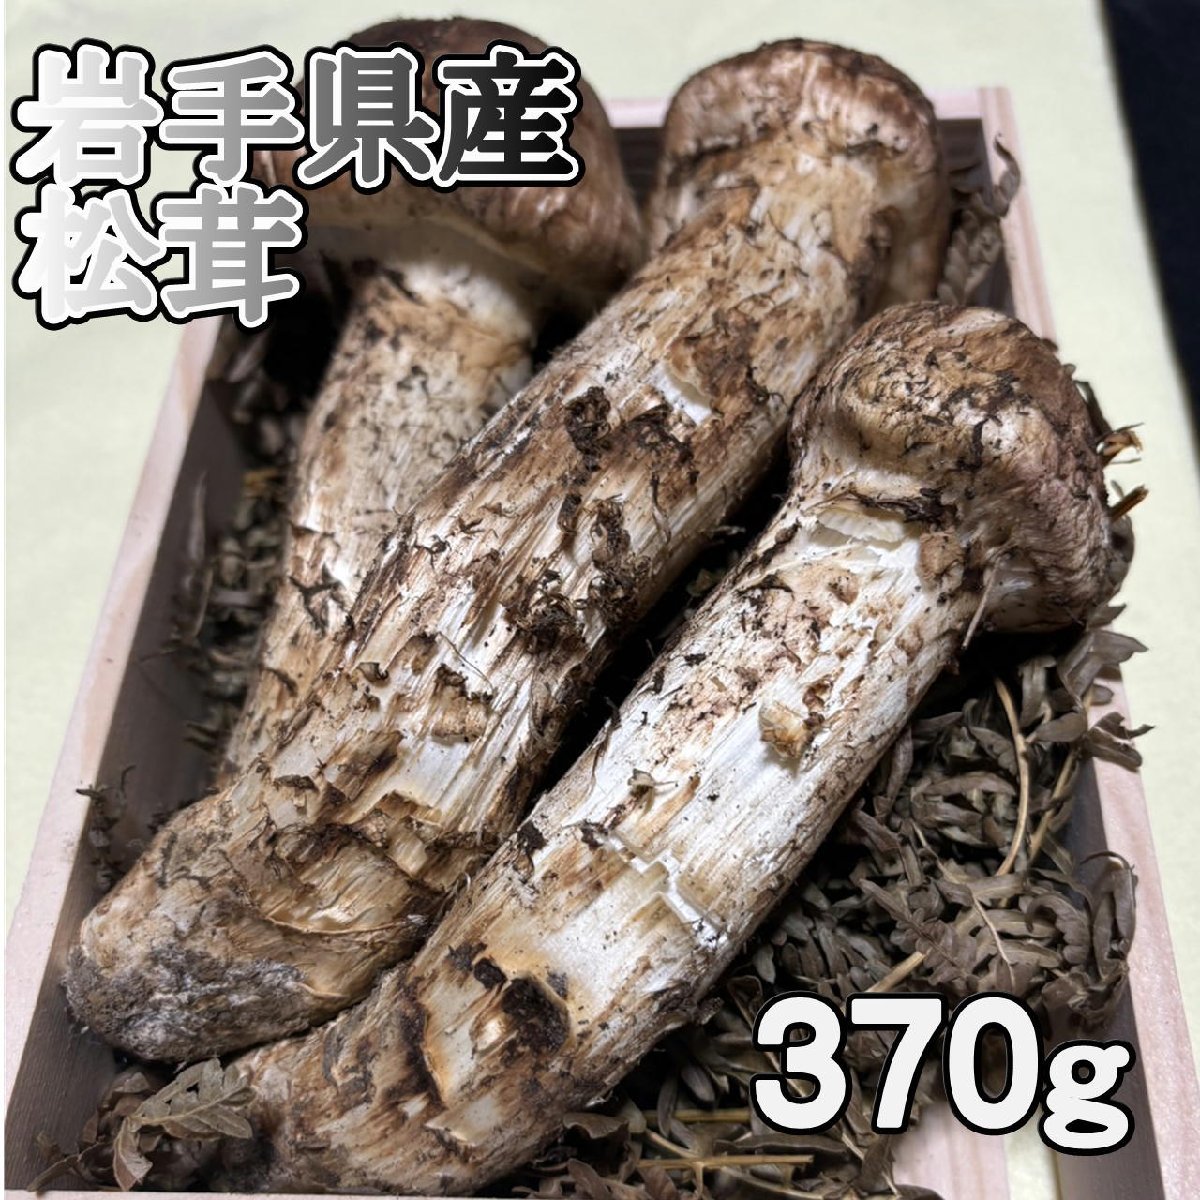 国産松茸 北海道産430g - 野菜、果物